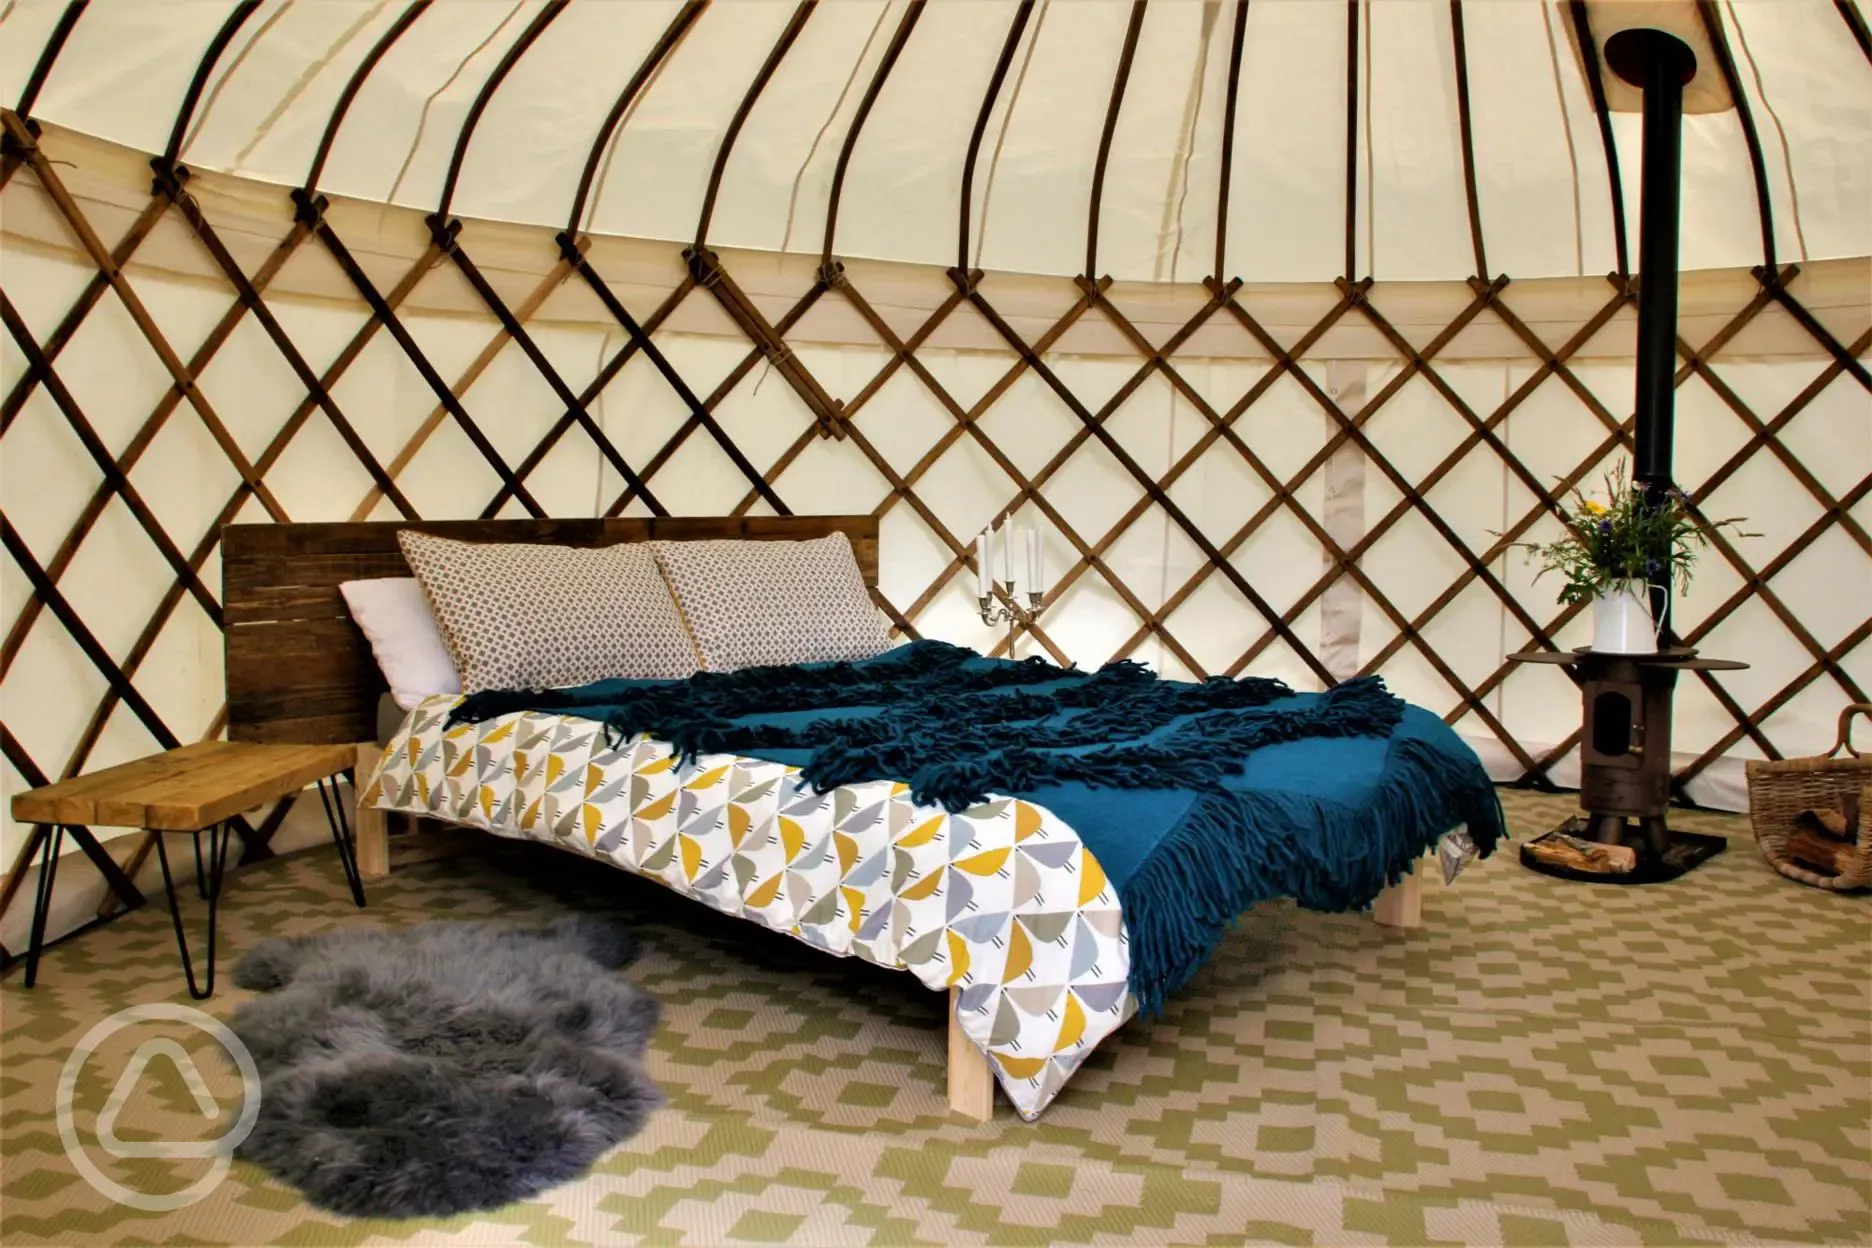 Inside the yurt